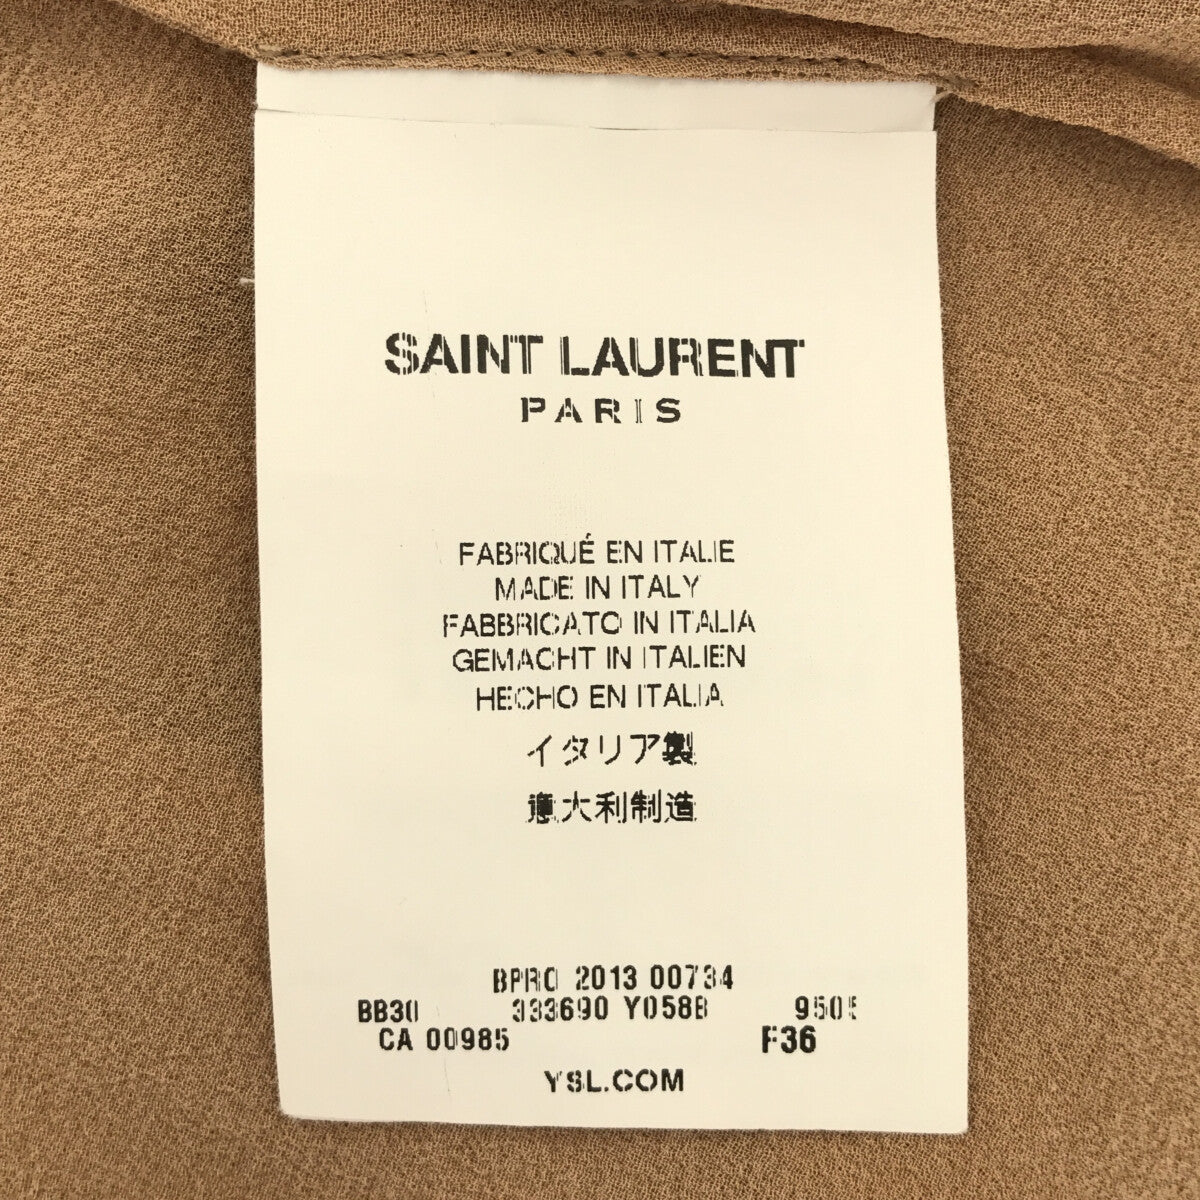 SAINT LAURENT PARIS / サンローランパリ | 丸襟 シフォンブラウス | 36 | キャメル | レディース